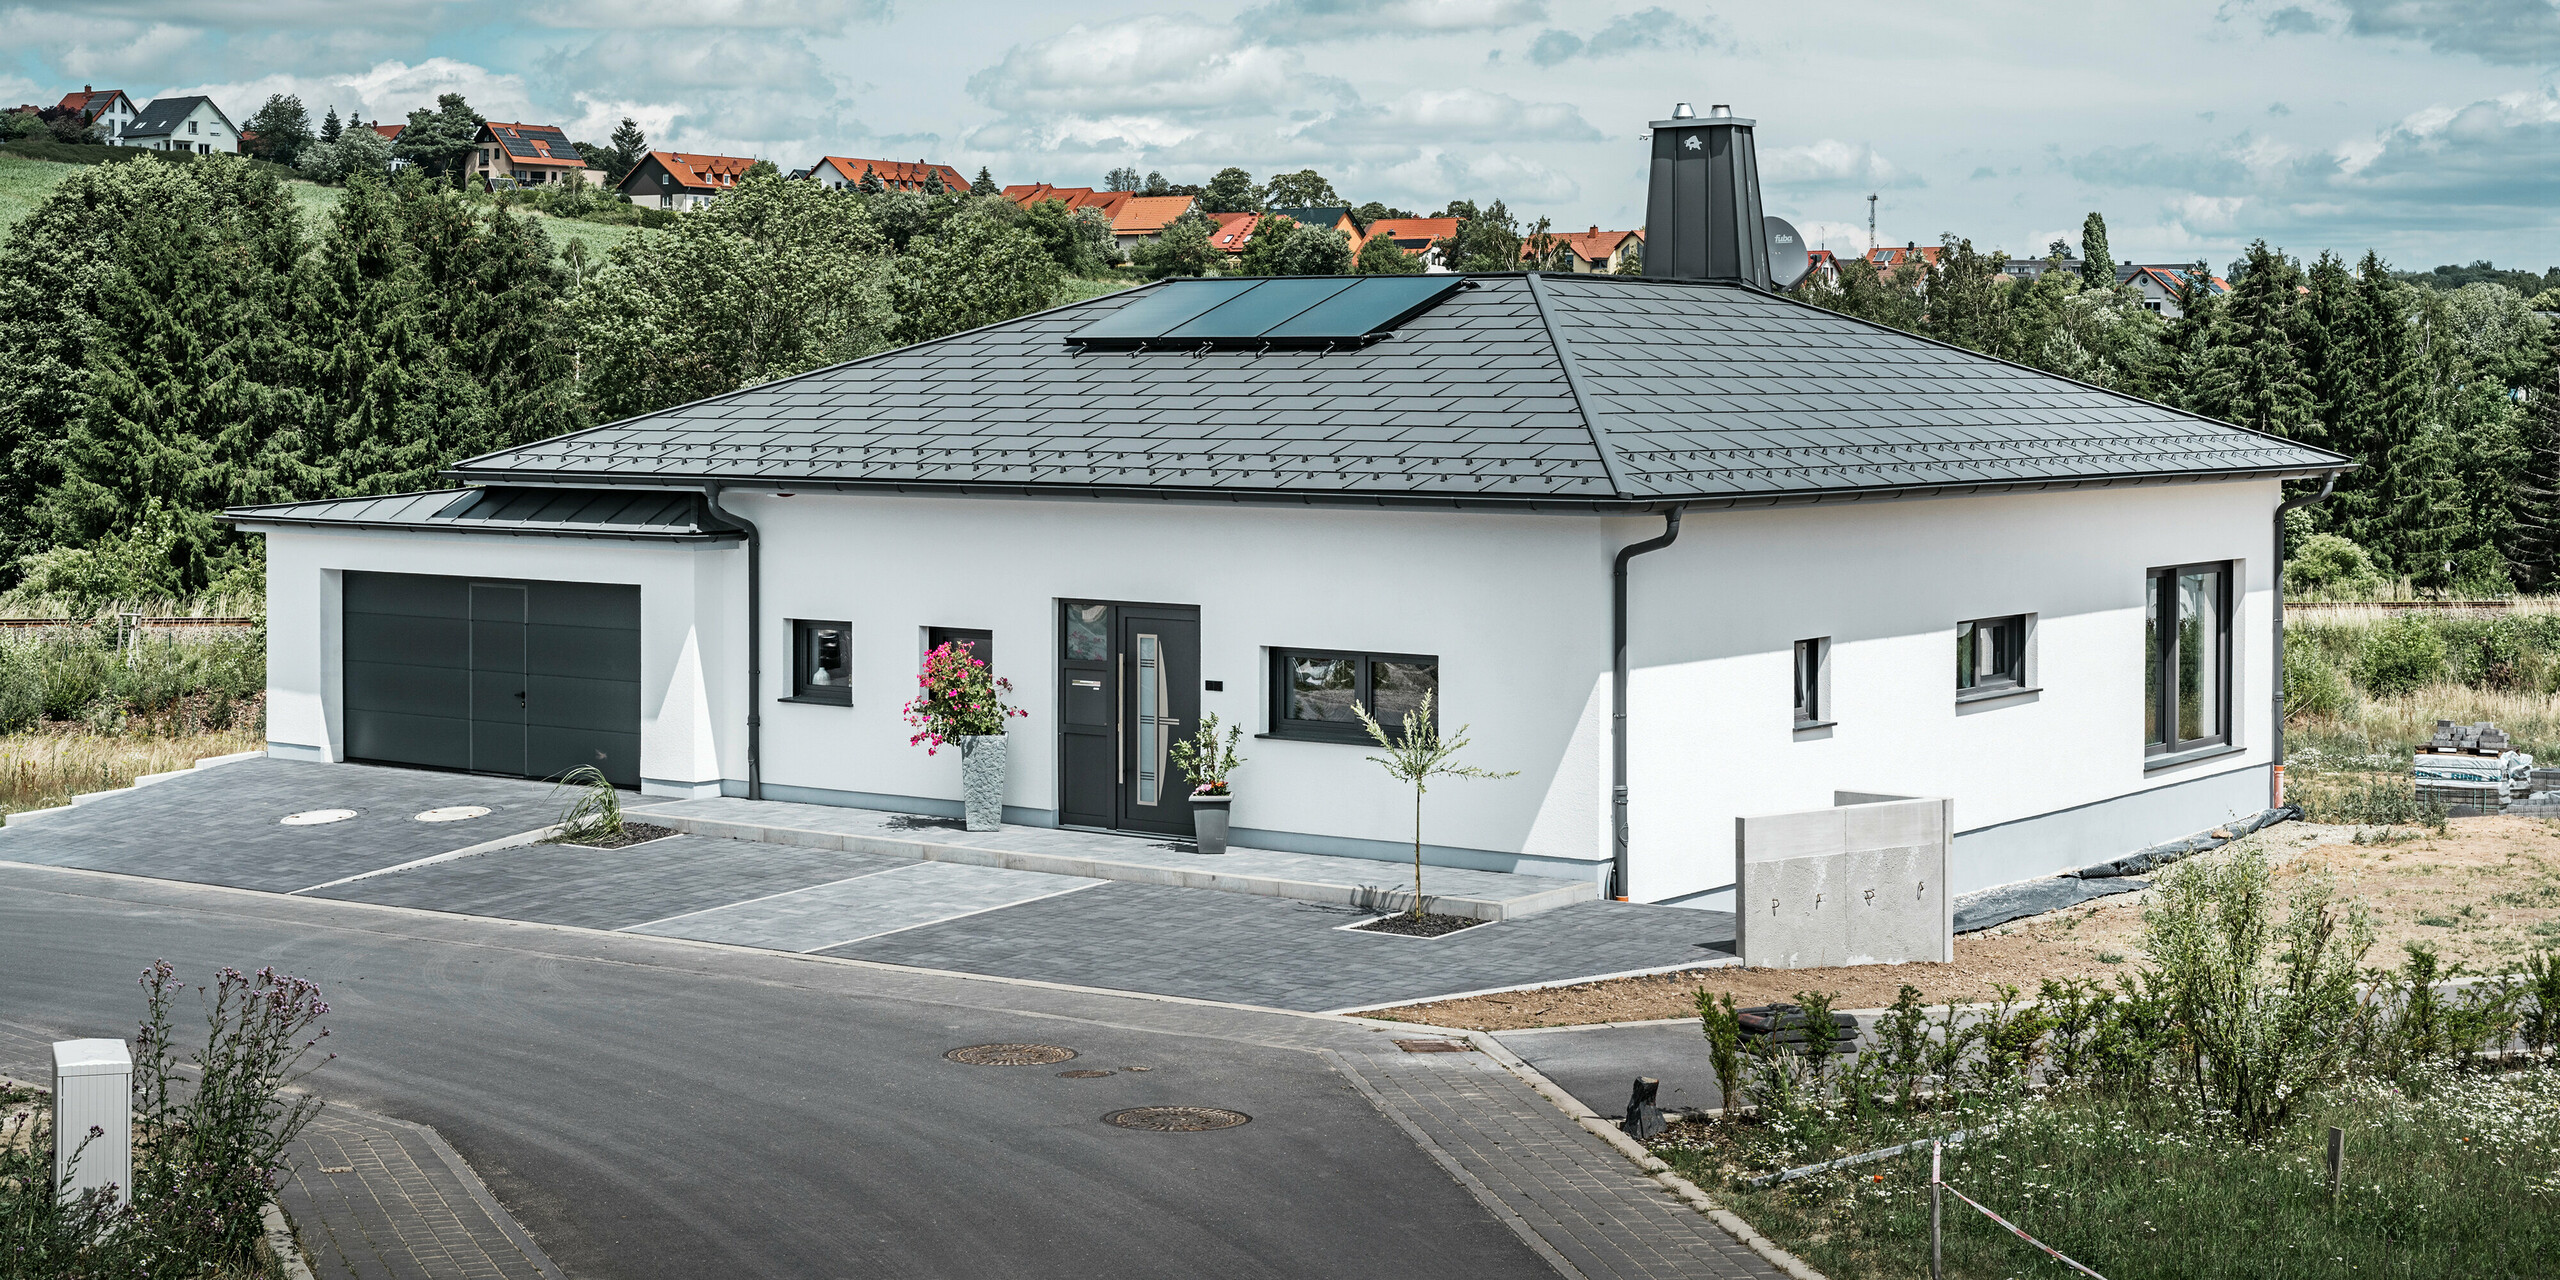 Elegantes Einfamilienhaus in Ilmenau, Thüringen, mit einem hochwertigen PREFA Dach in der Farbe P.10 Dunkelgrau, ausgestattet mit der robusten Dachplatte R.16. Die Garage harmoniert in Farbe und Stil durch die Verwendung von PREFALZ. Der Blickfang des Anwesens ist das funktional gestaltete Atrium und der mit dem PREFA Stier verzierte Schornstein, welcher das moderne Design und die innovative Dachtechnologie von PREFA unterstreichen. Die Solarpaneele fügen sich nahtlos in das nachhaltige Konzept des Hauses ein. Abgerundet wird das durchdachte Gesamtkonzept des Bungalows durch das PREFA Dachentwässerungssytem, welches ebenfalls in Dunkelgrau gehalten ist.